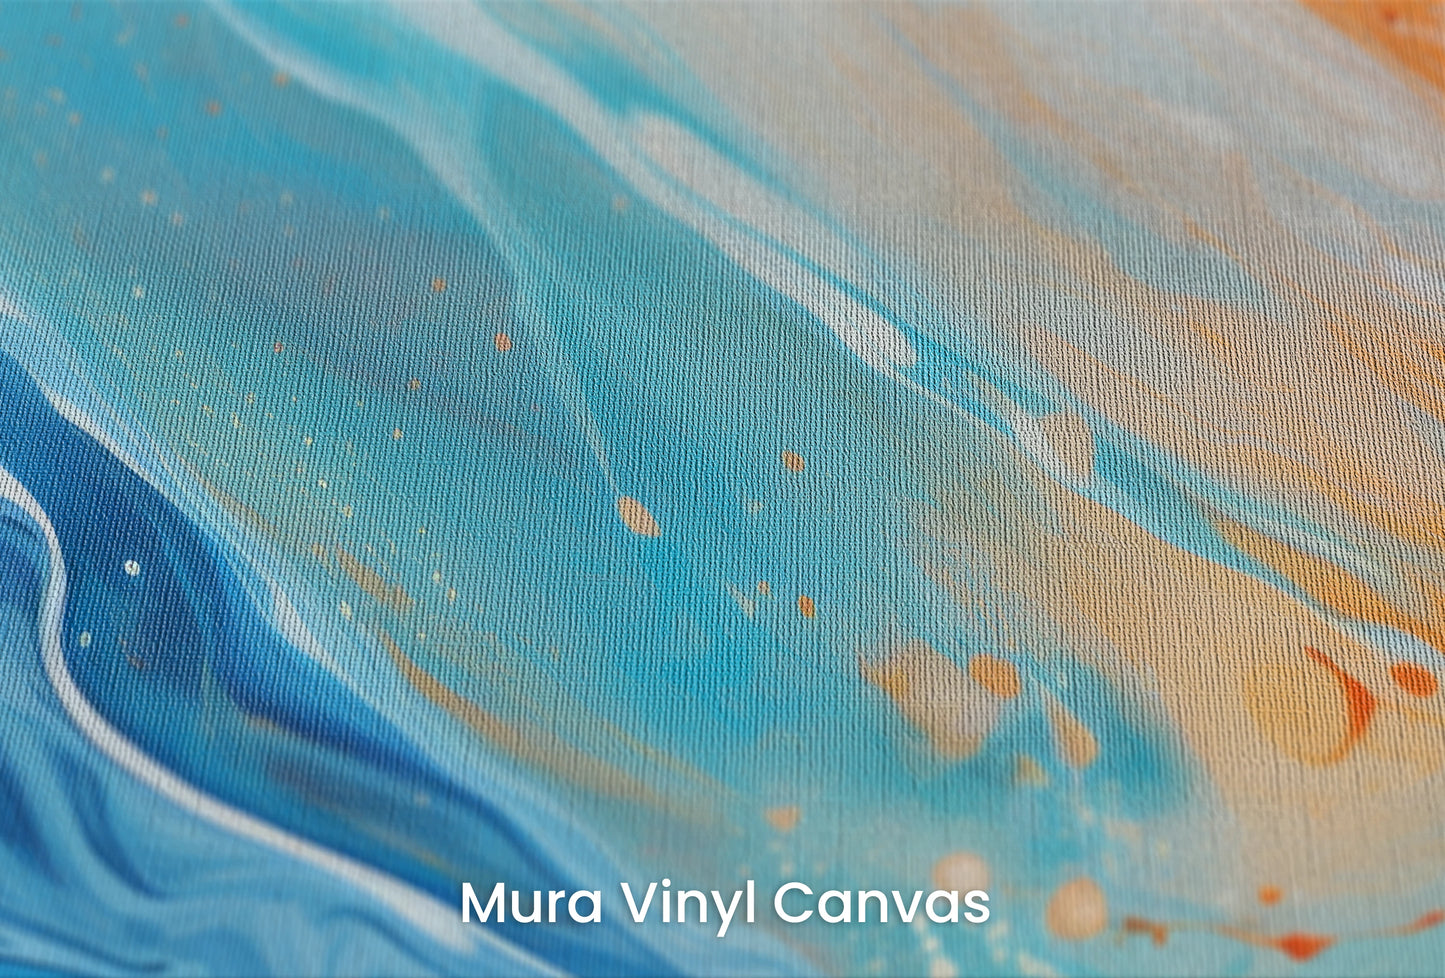 Zbliżenie na artystyczną fototapetę o nazwie Lunar Landscape na podłożu Mura Vinyl Canvas - faktura naturalnego płótna.